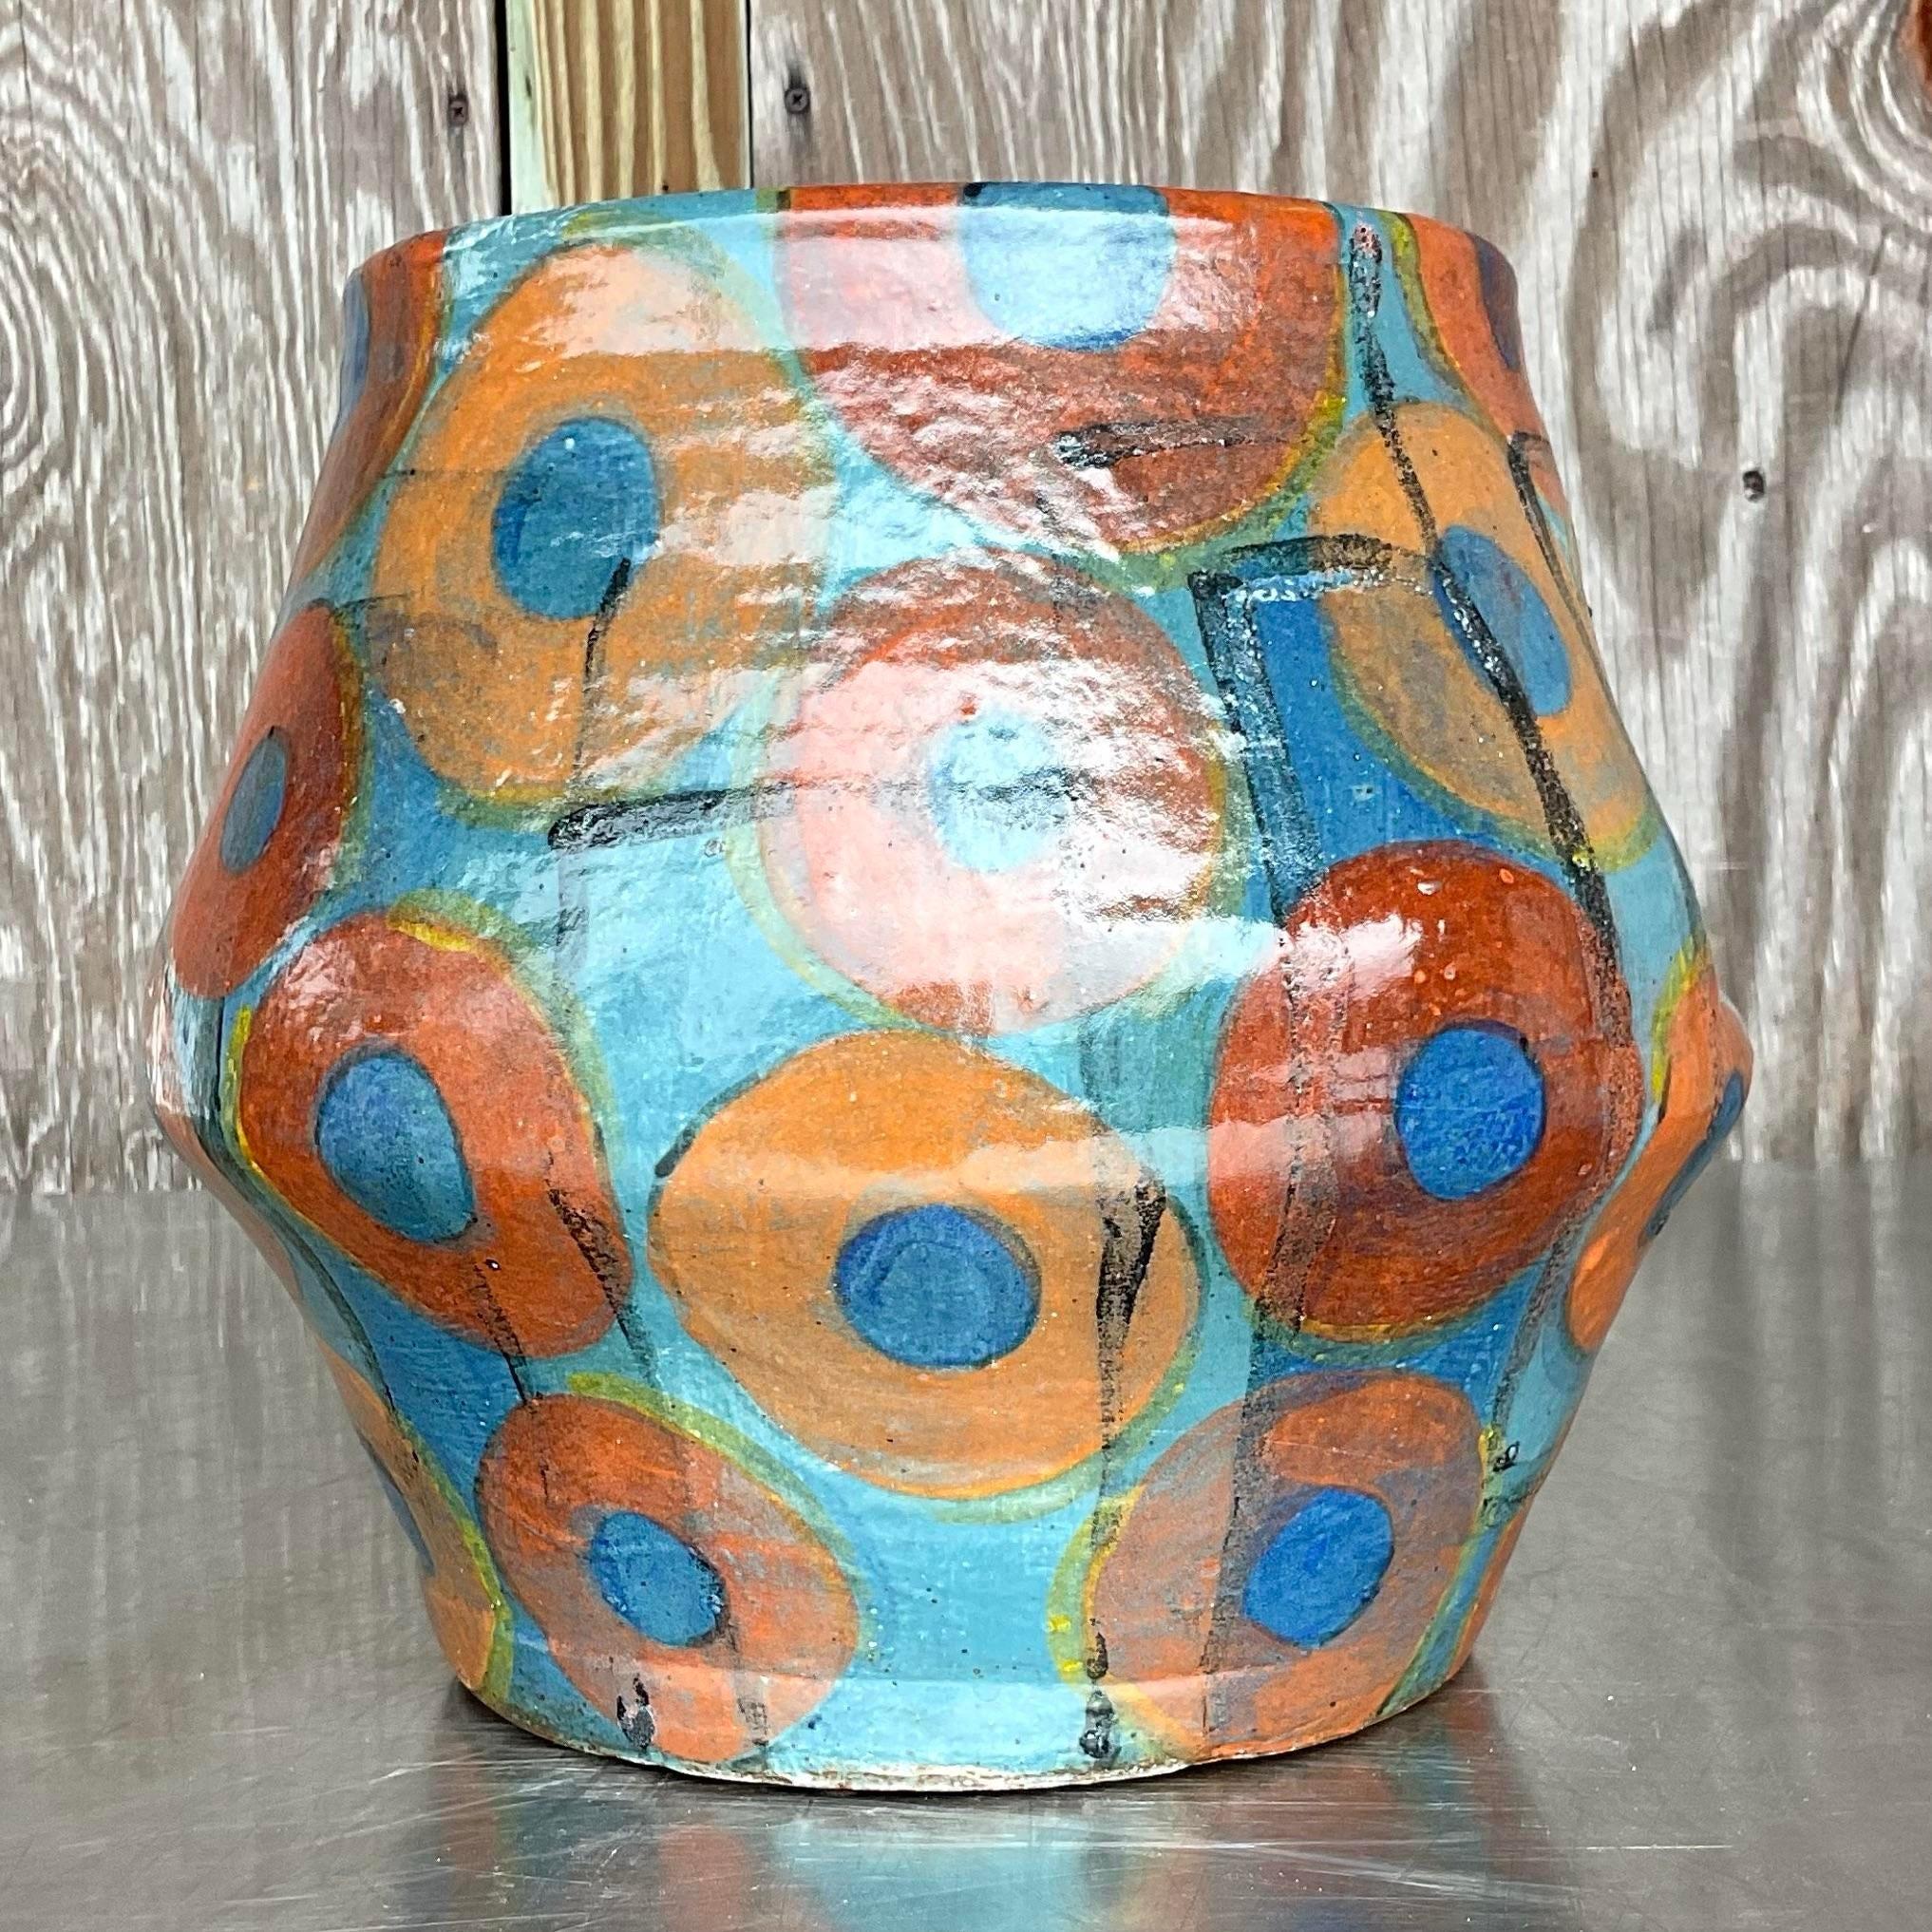 Embrassez le charme éclectique avec ce vase vintage boho signé studio pottery, véritable témoignage de l'artisanat américain. Chaque courbe et chaque glaçure racontent une histoire d'expression artistique, ajoutant une touche de caractère et de